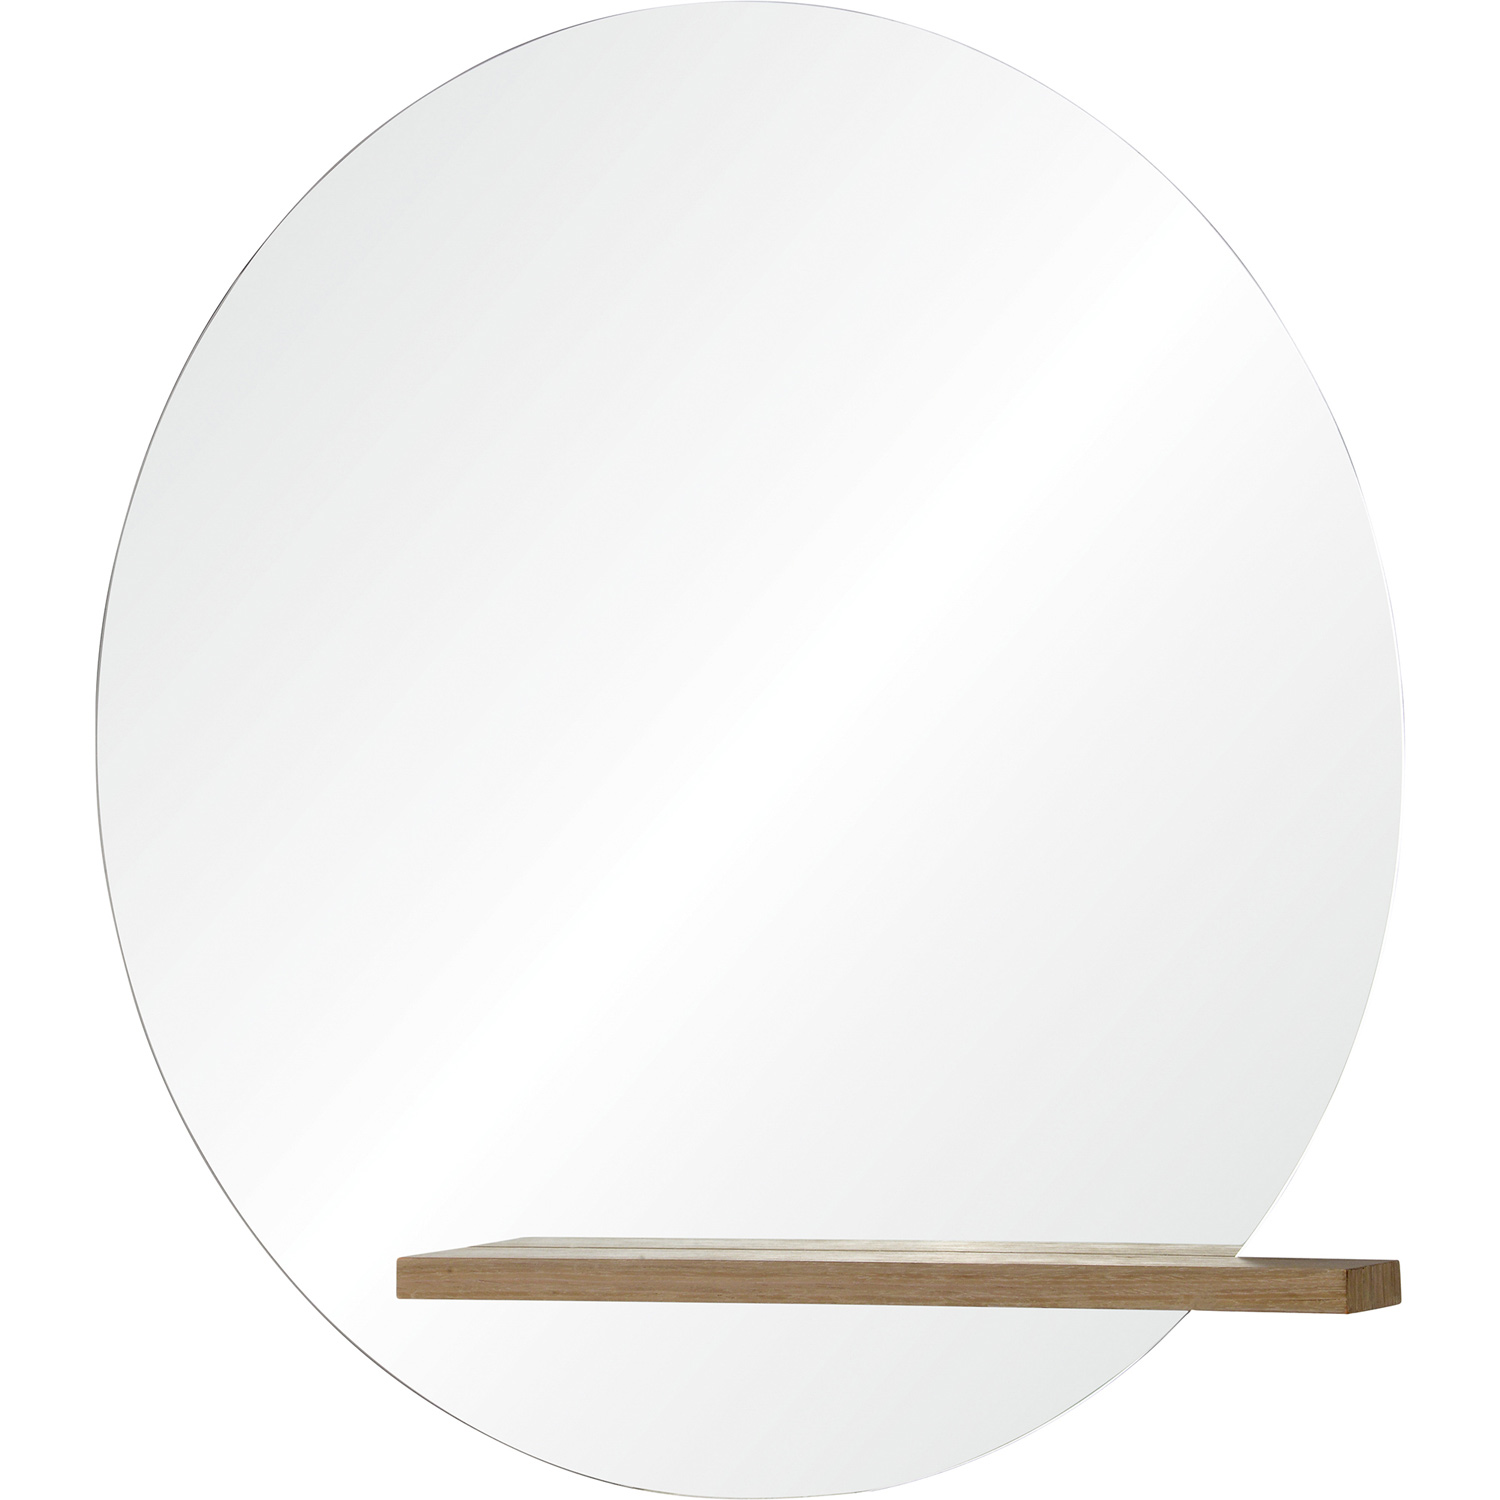 Ren-Wil Bassett Round Mirror - Mirror